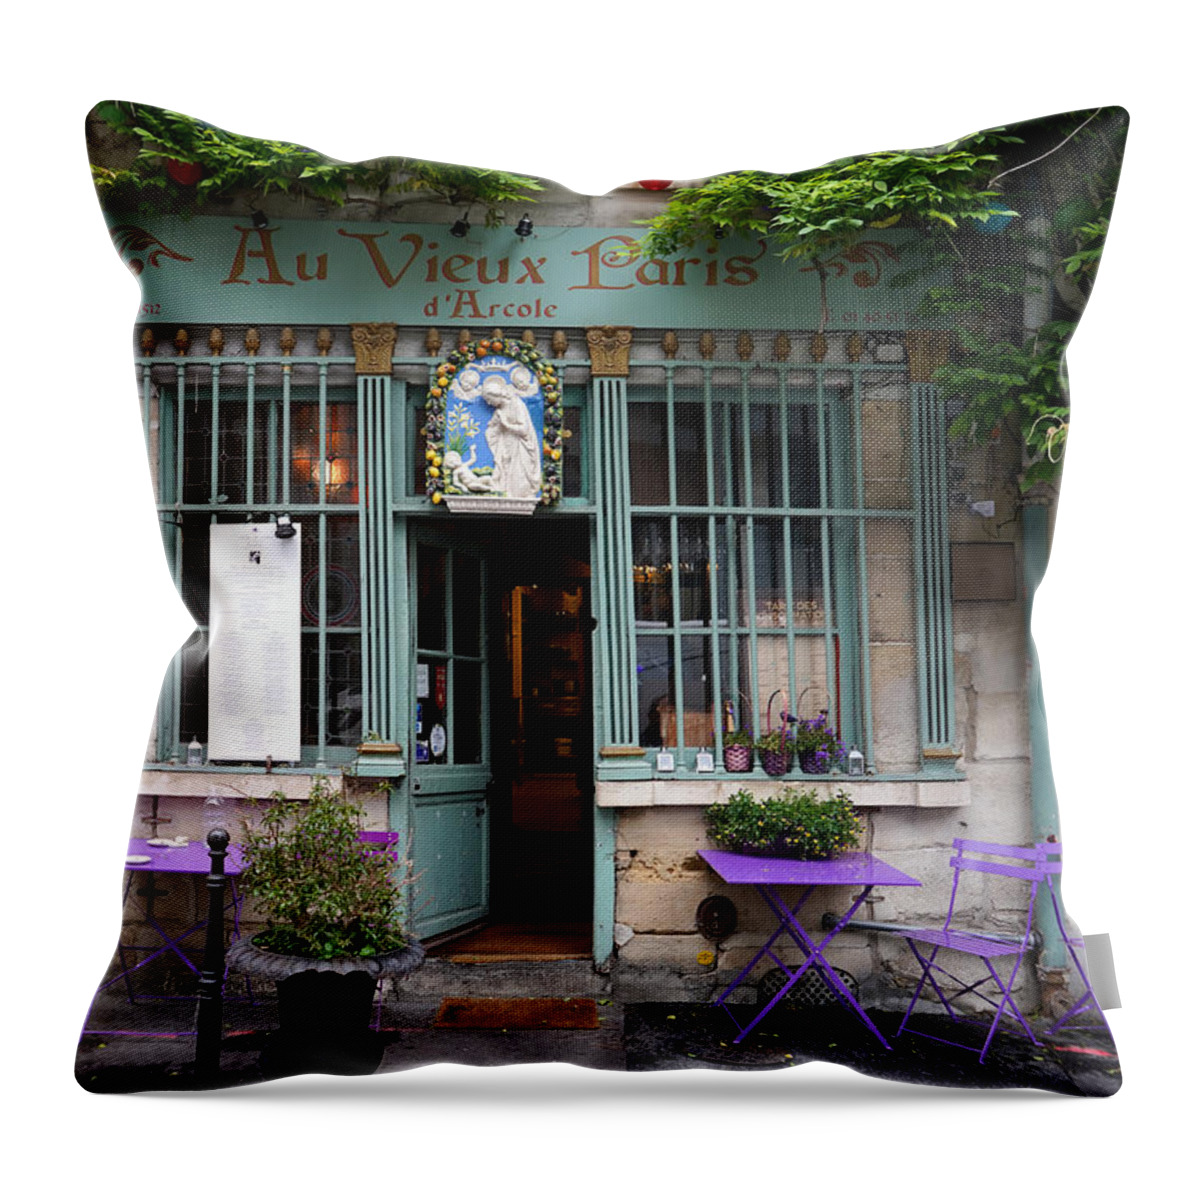 Quaint Paris Cafe Throw Pillow featuring the photograph Quaint Paris Cafe by Andrew Fare